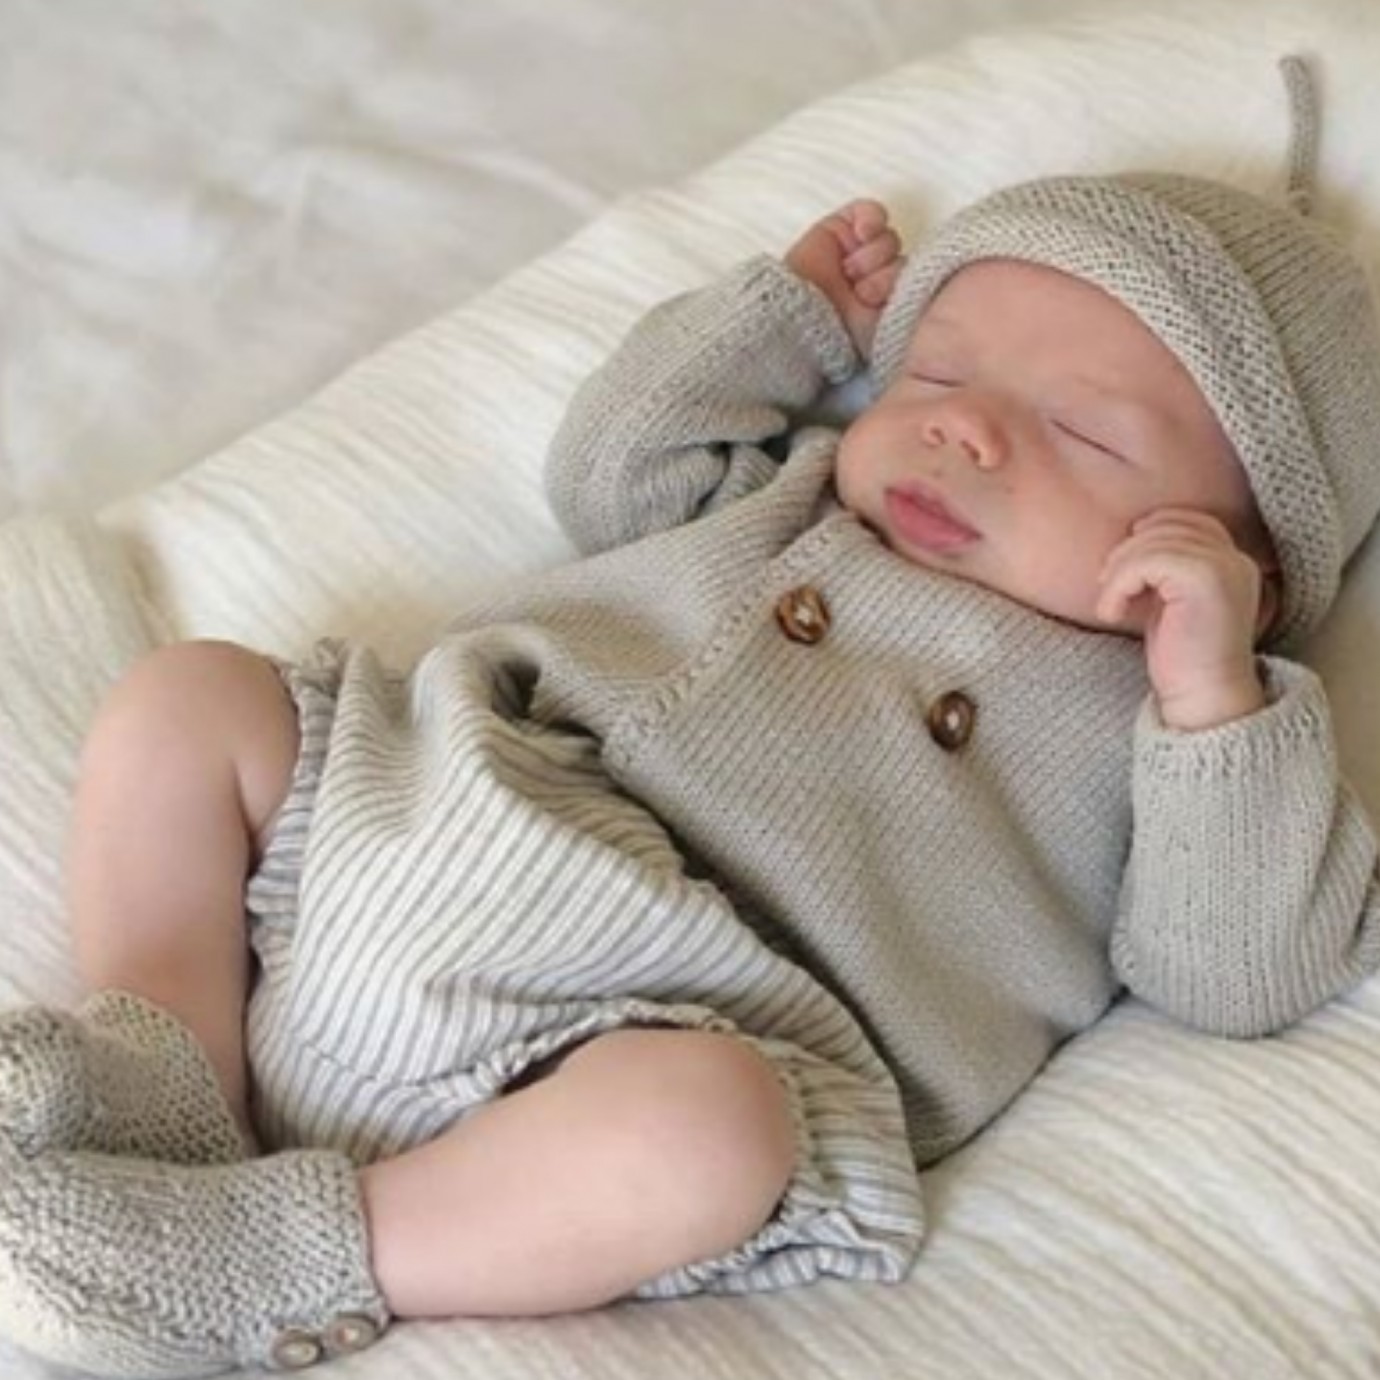 Brassière bébé en laine mérinos tricotée